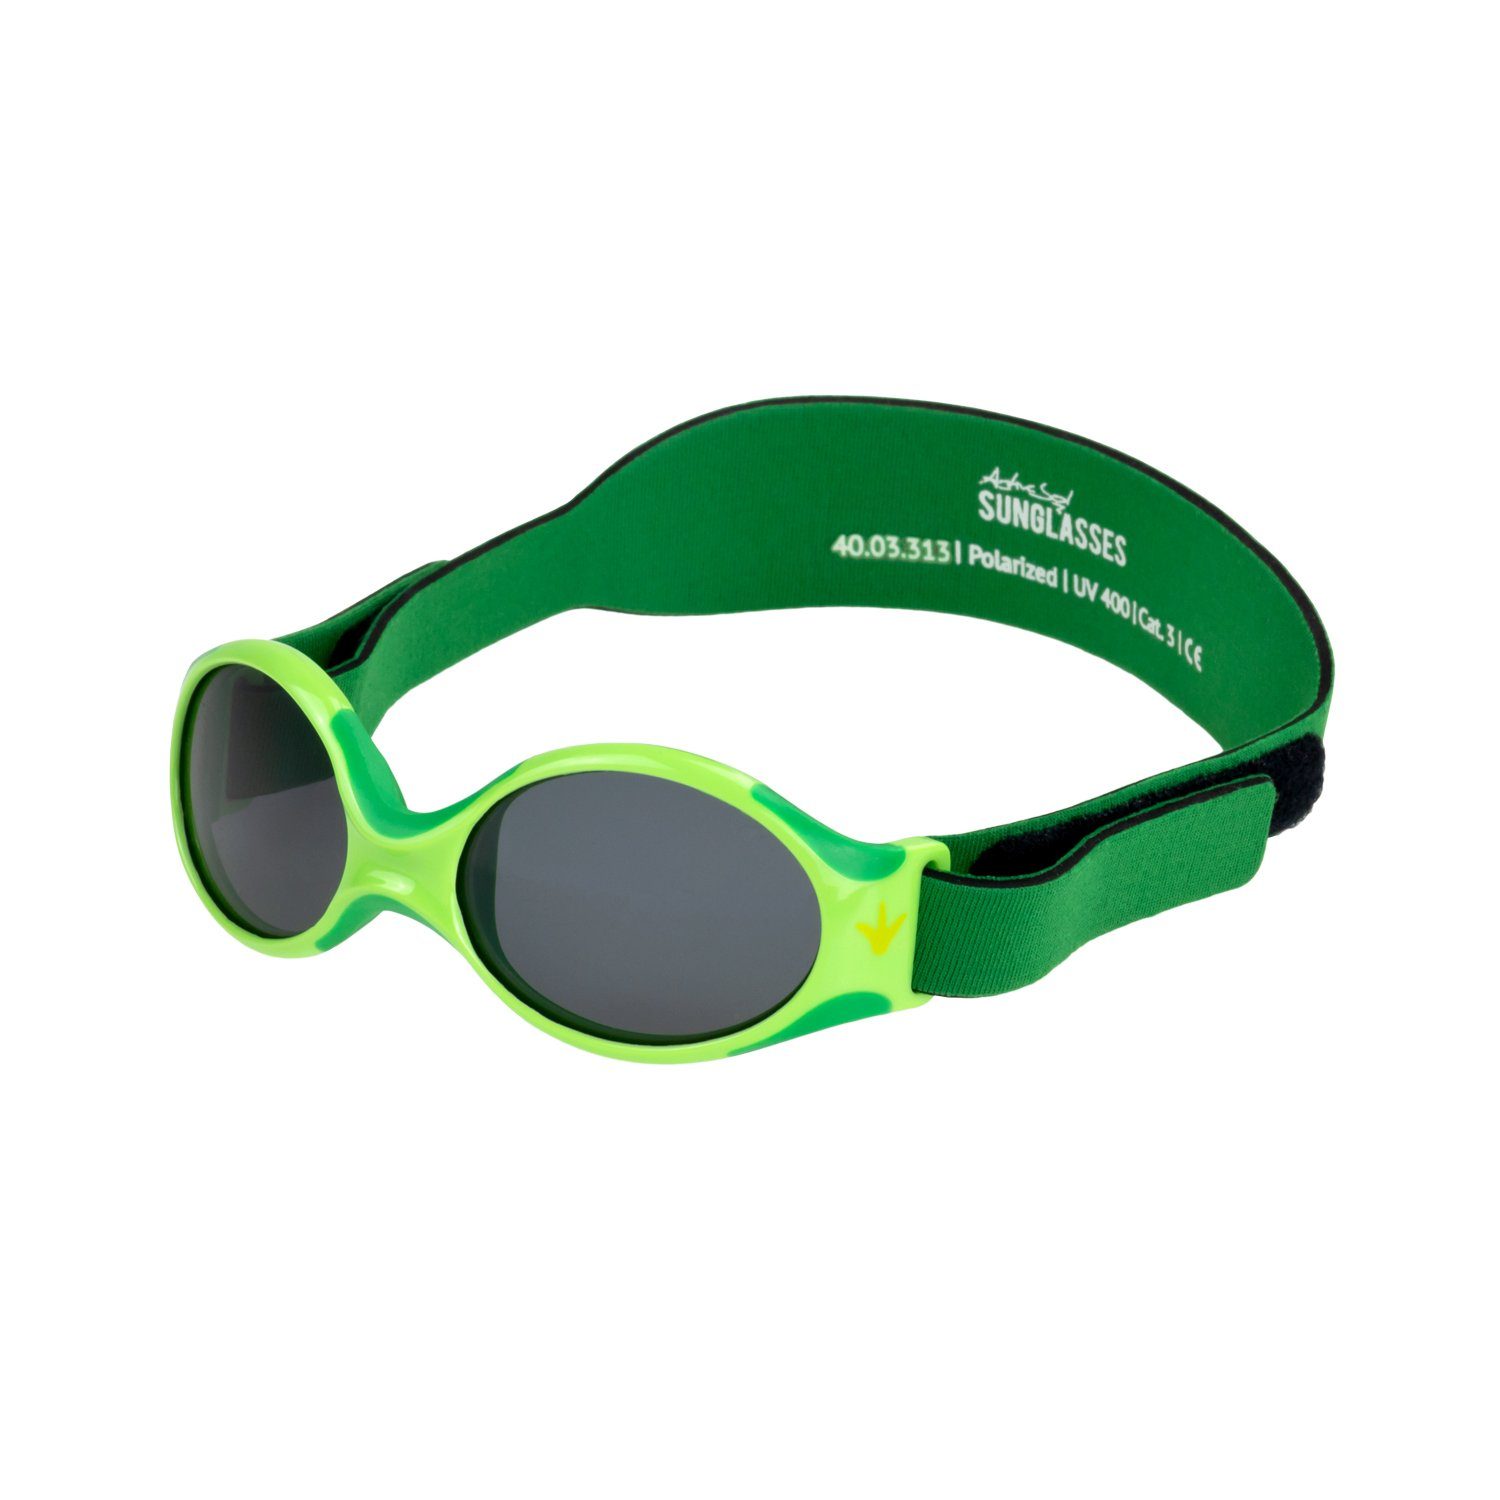 ActiveSol SUNGLASSES Sonnenbrille Baby Sonnenbrillen EXPLORER, Jungen & Mädchen, 0-2 Jahre Polarisierte premium Gläser mit Lotuseffekt, supersoft, verstellbar Frosch - grün